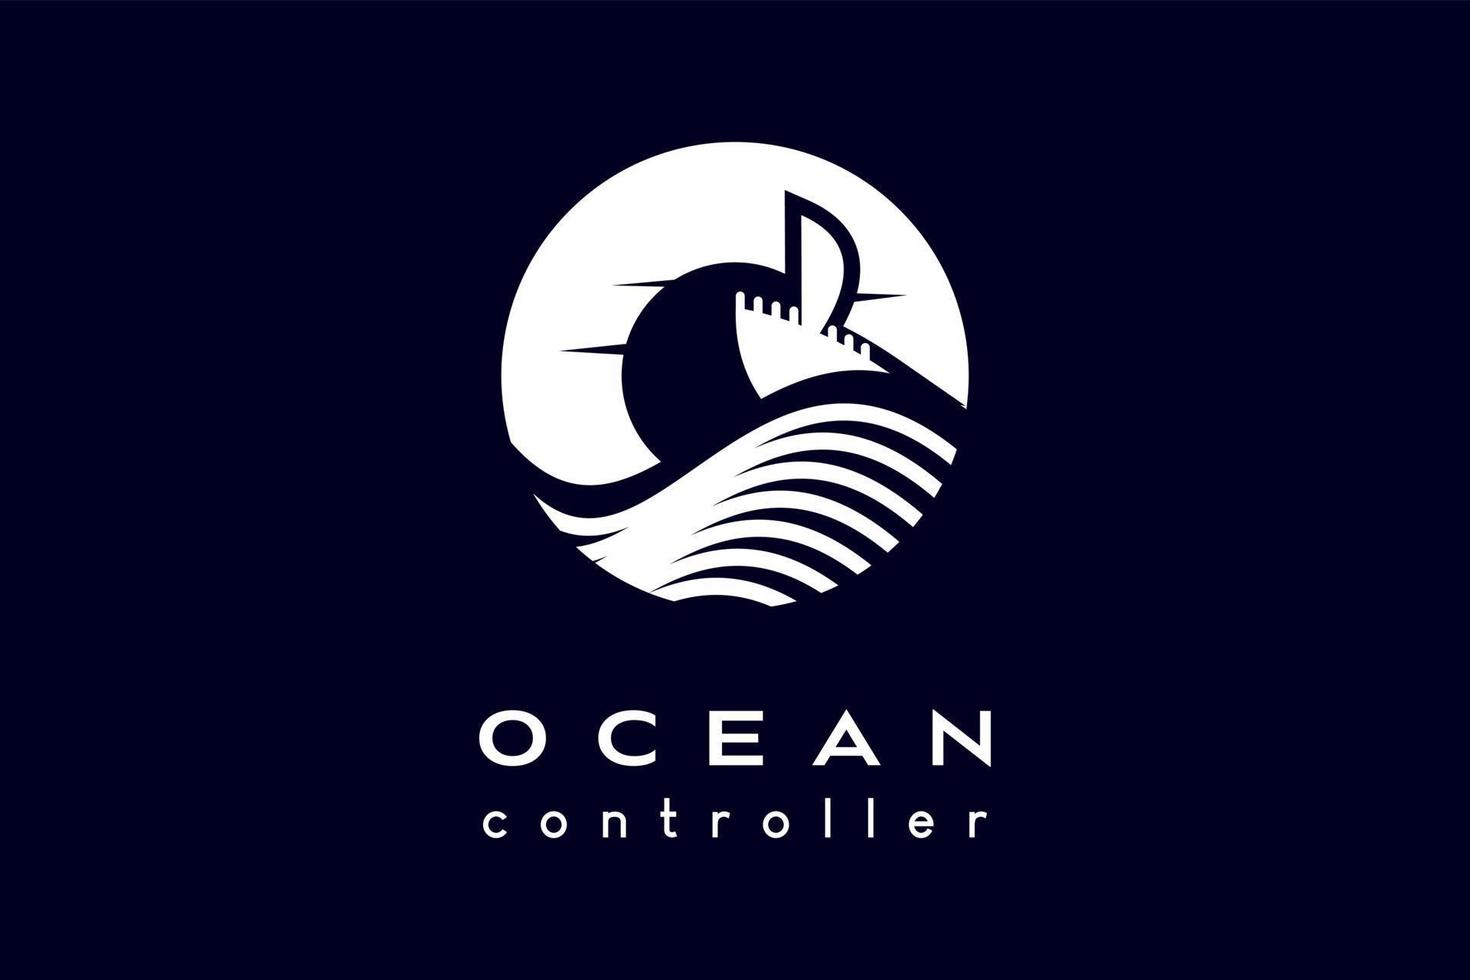 Ocean logo design, ocean icon, sun or moon and ship icon with creative concept in circle. Modern vector illustration